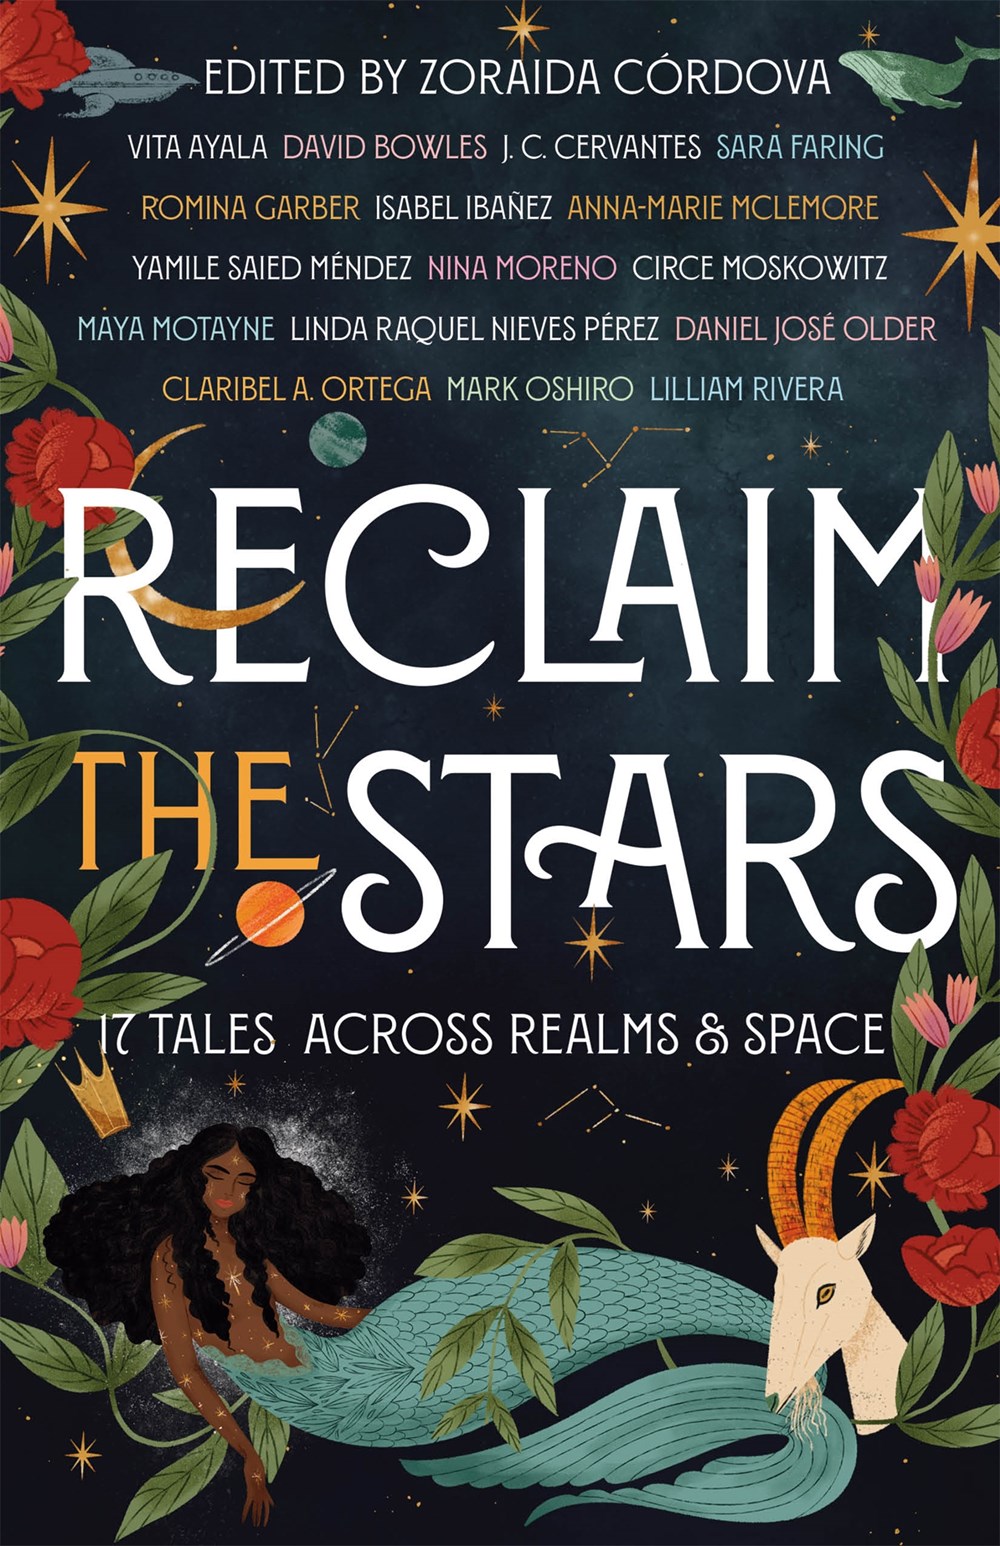 Reclaim the Stars by Zoraida Córdovas